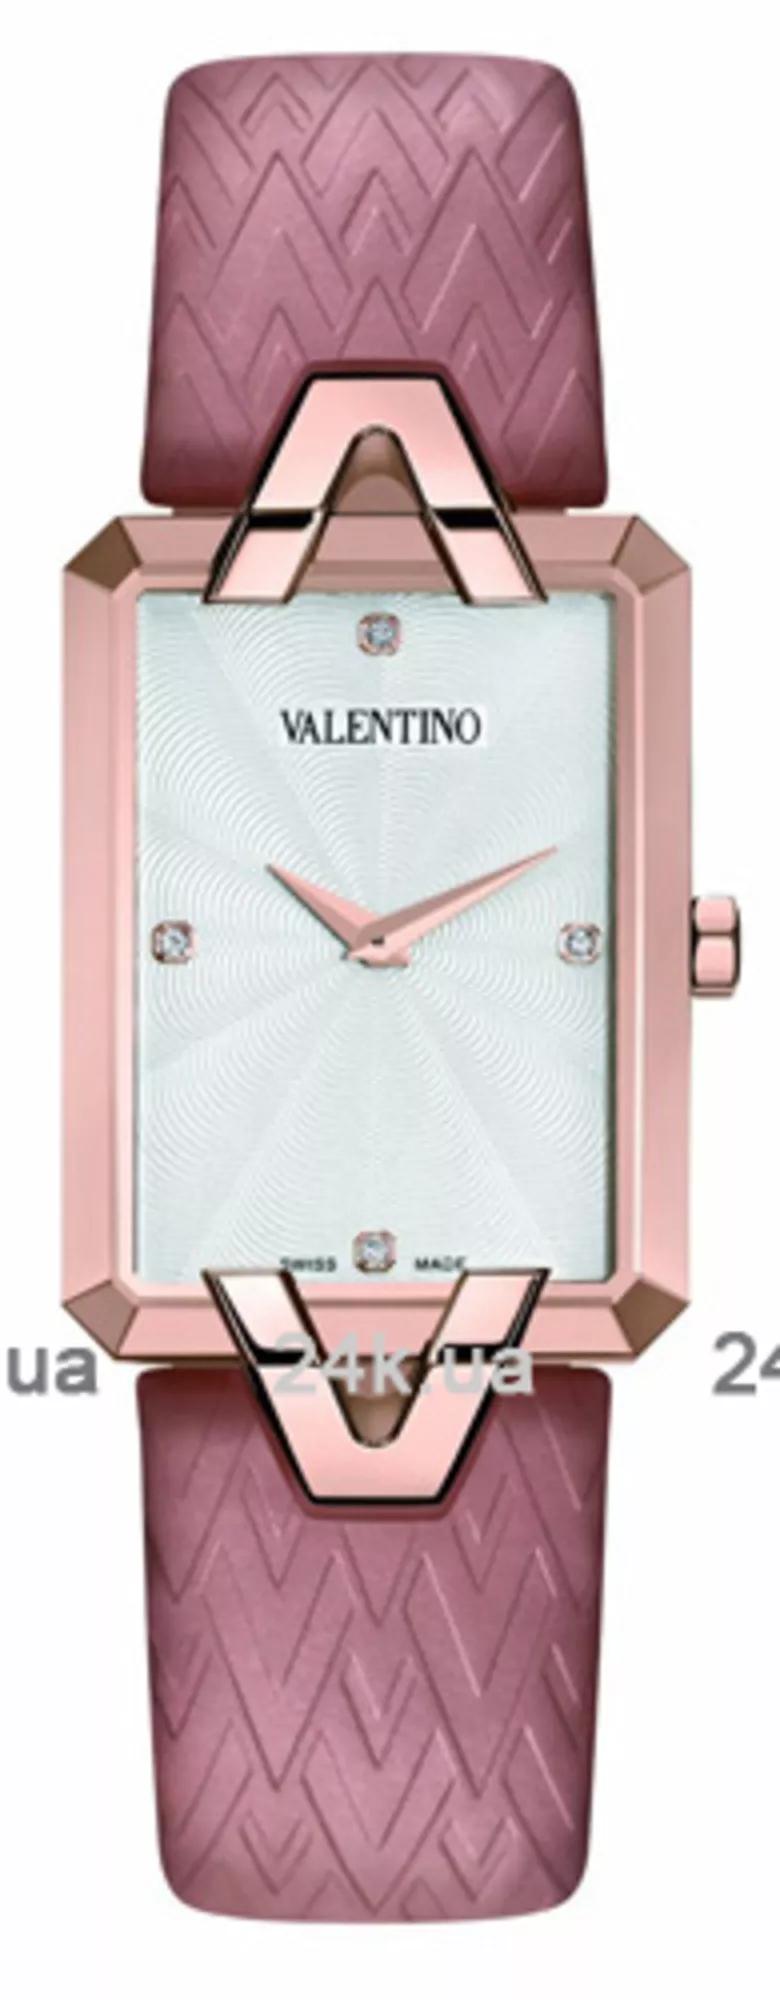 Часы Valentino VL36SBQ5002SS111